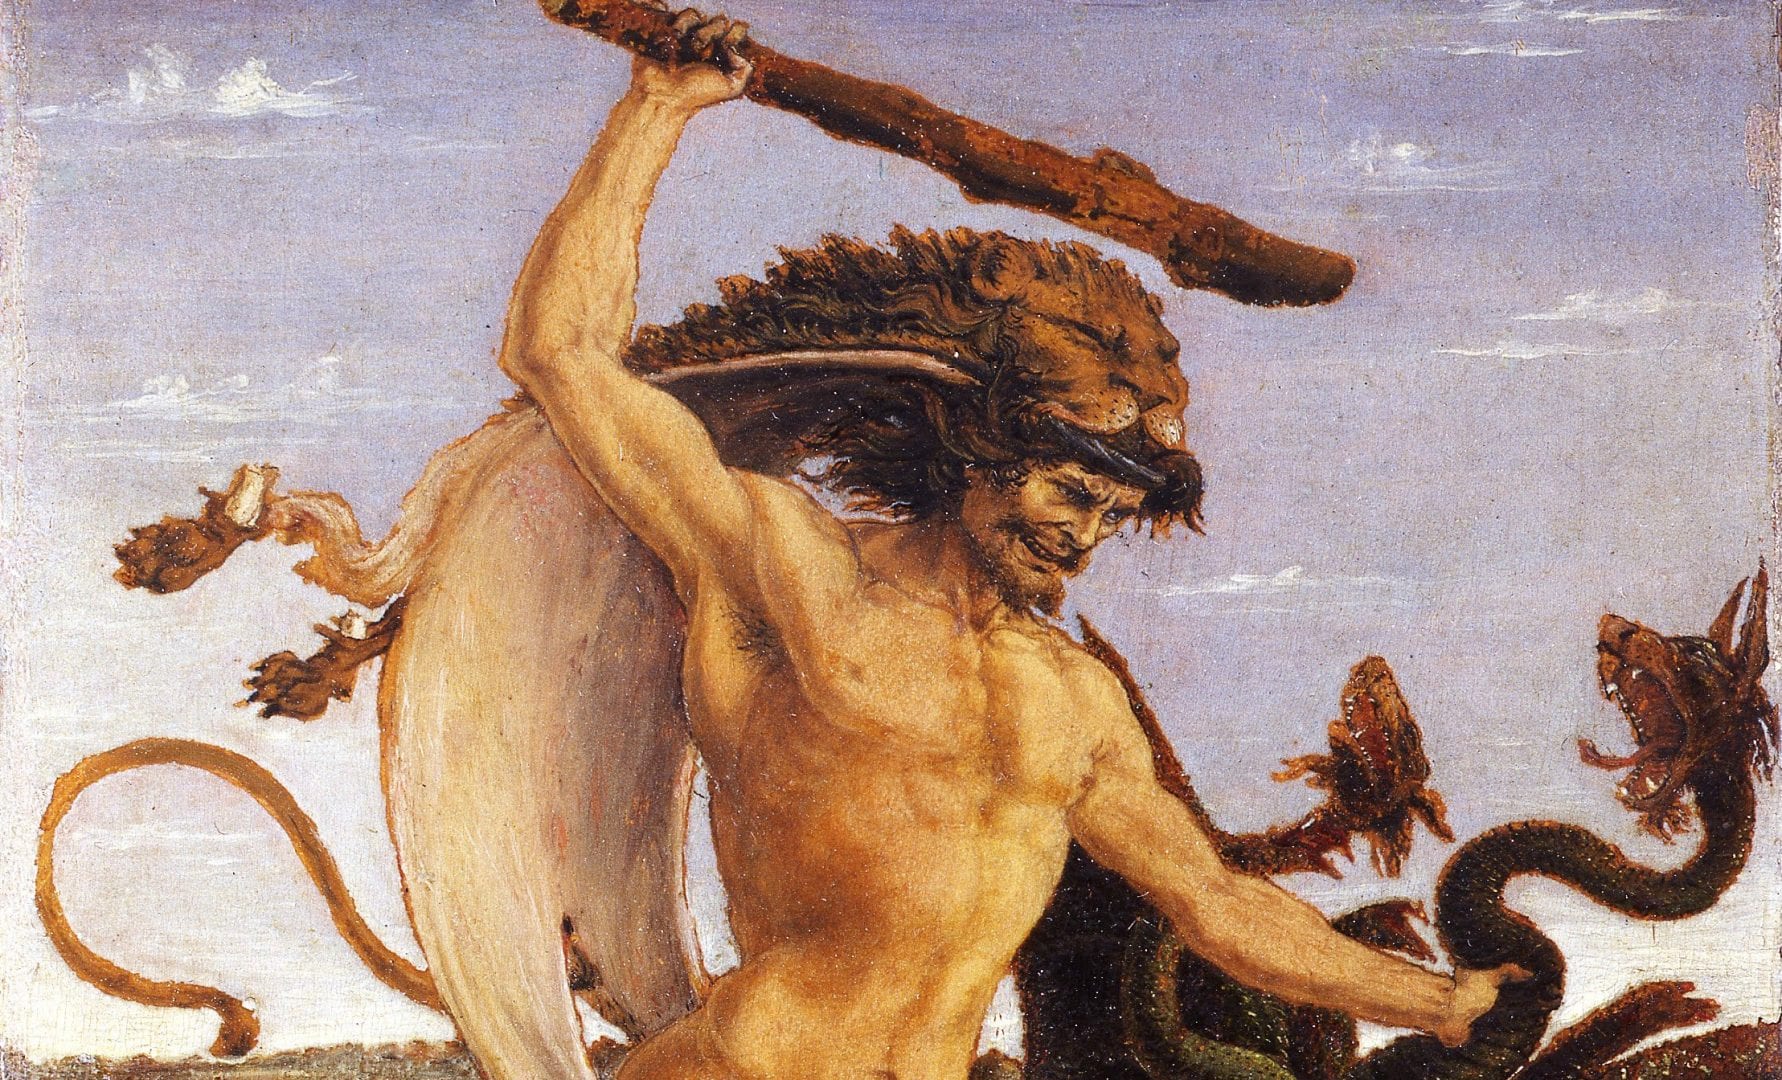 Hércules - origem, história e os doze trabalhos do semideus